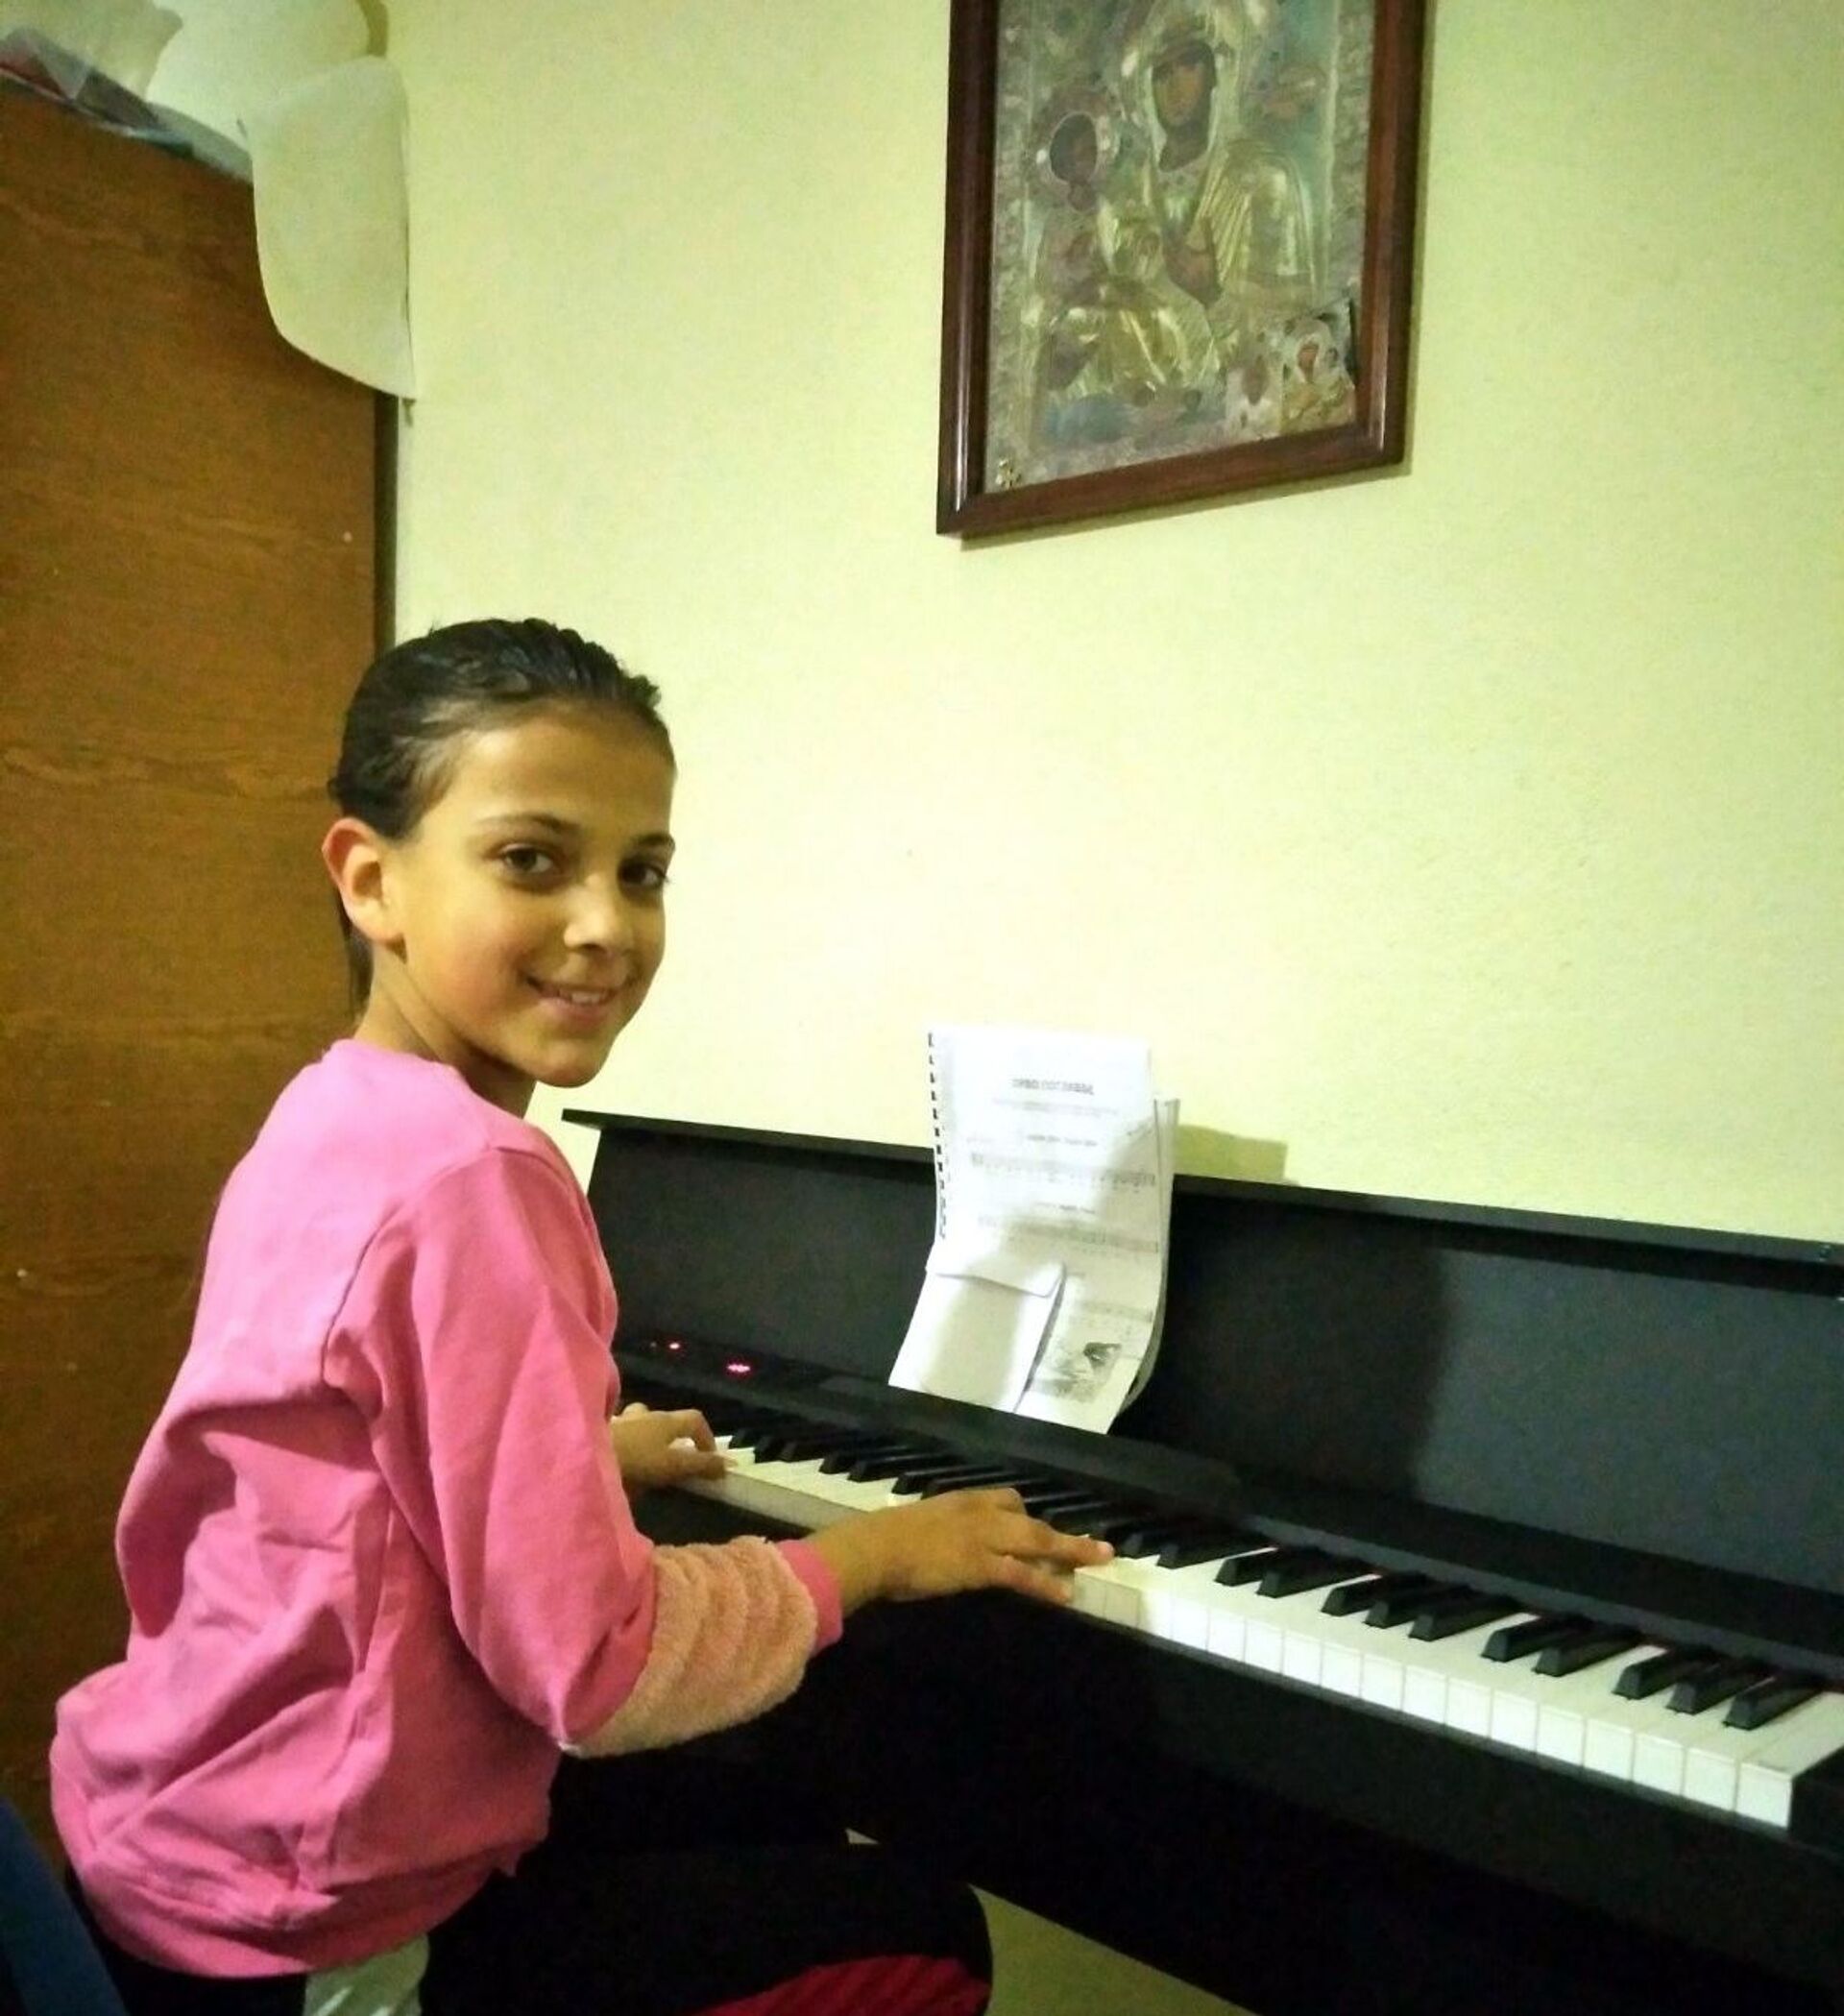 Ова талентована девојчица добила је клавир захваљујући манастиру Високи Дечани. - Sputnik Србија, 1920, 22.03.2022